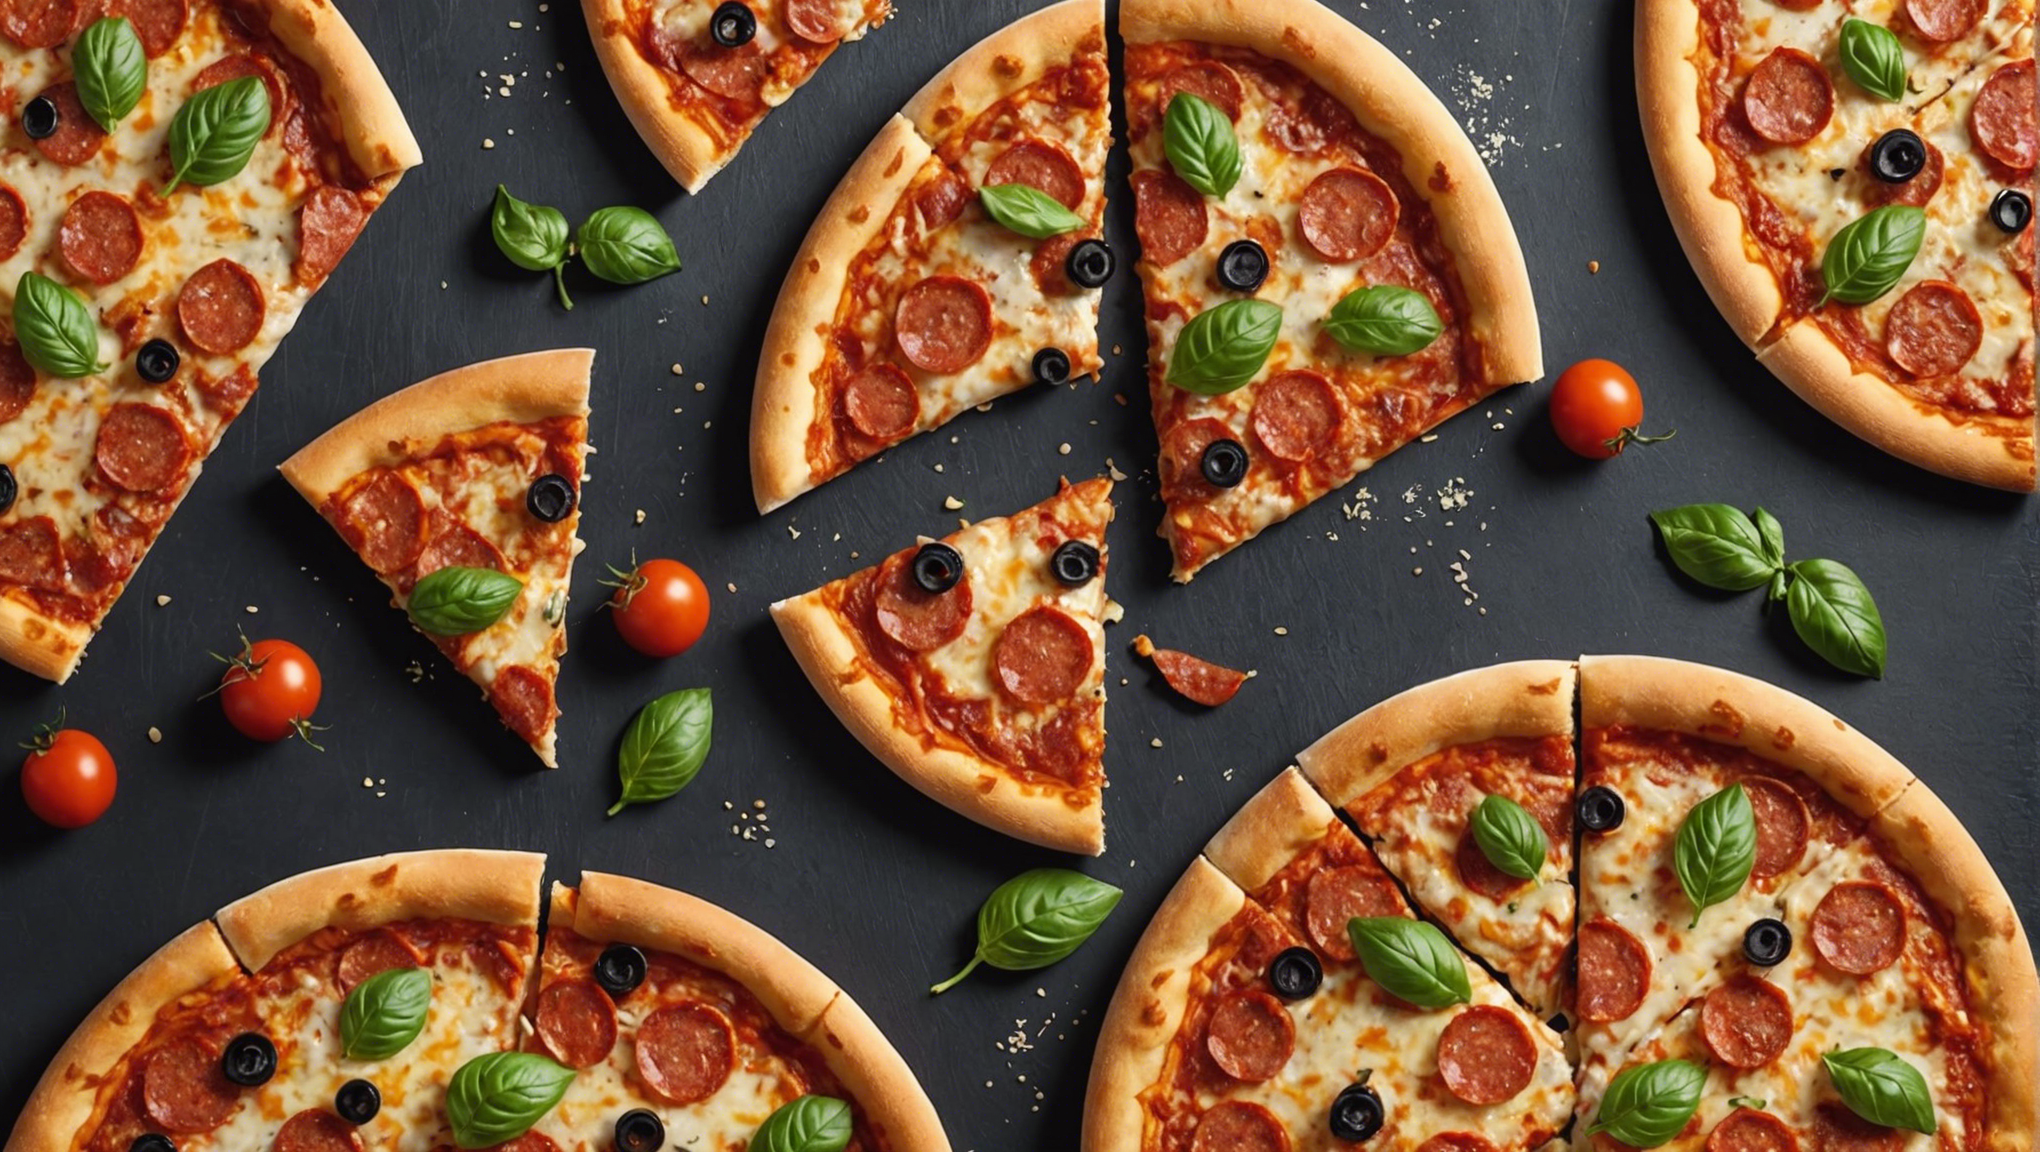 découvrez le dernier modèle de four à pizza de chez lidl pour déguster les meilleures pizzas faites maison !